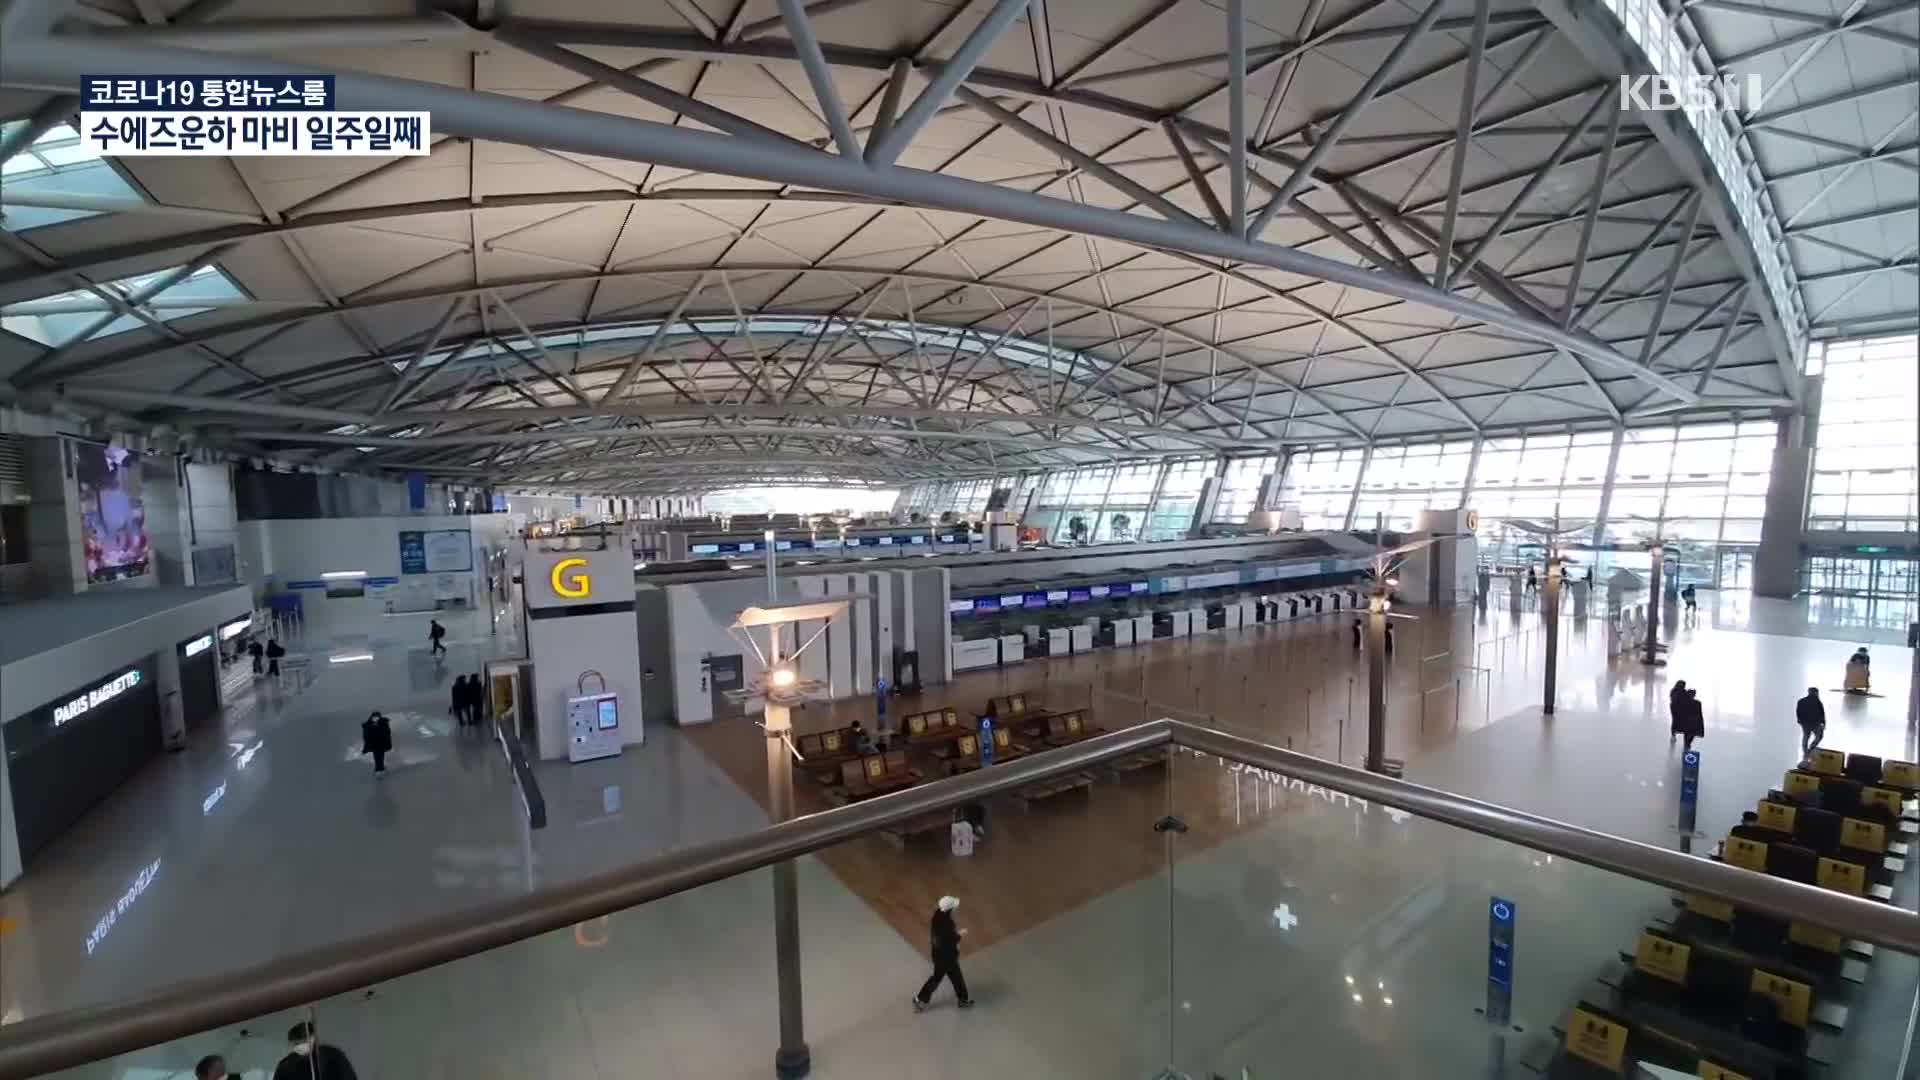 인천공항 개항 20주년, ‘Post 코로나’ 재도약 준비